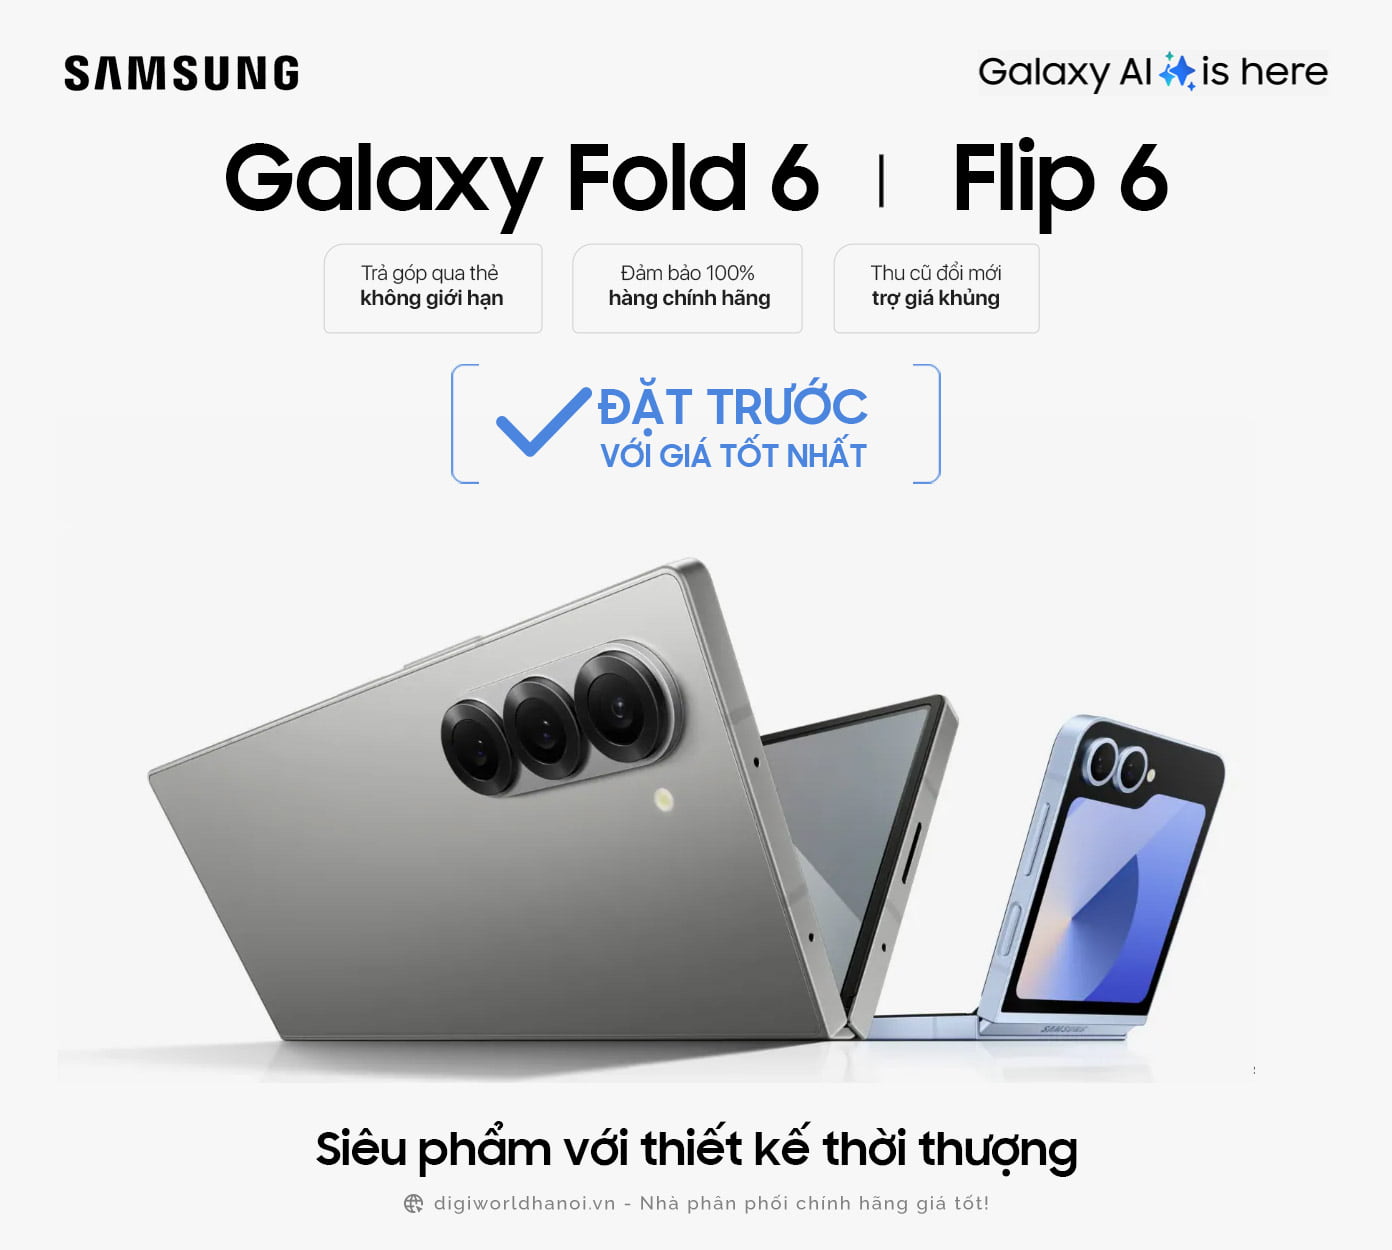 Đặt trước điện thoại Samsung Galaxy Fold 6, Flip 6 tại Digiworld Hà Nội với giá tốt nhất!